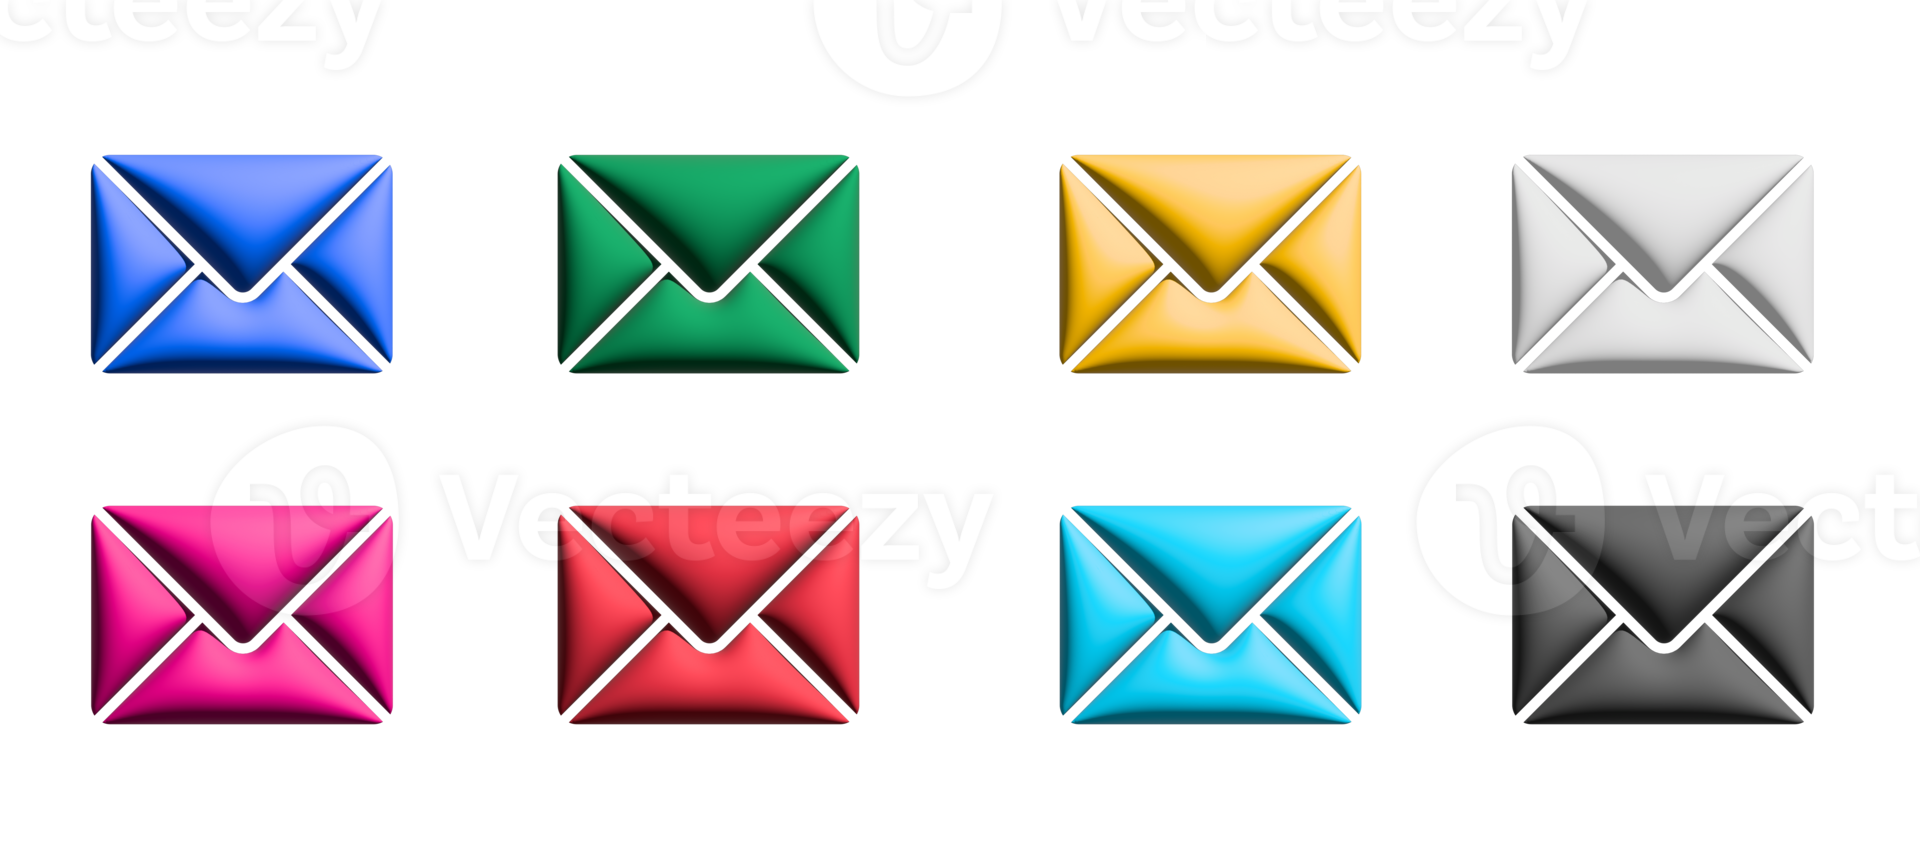 conjunto de iconos de correo electrónico, elementos gráficos de símbolos de colores png